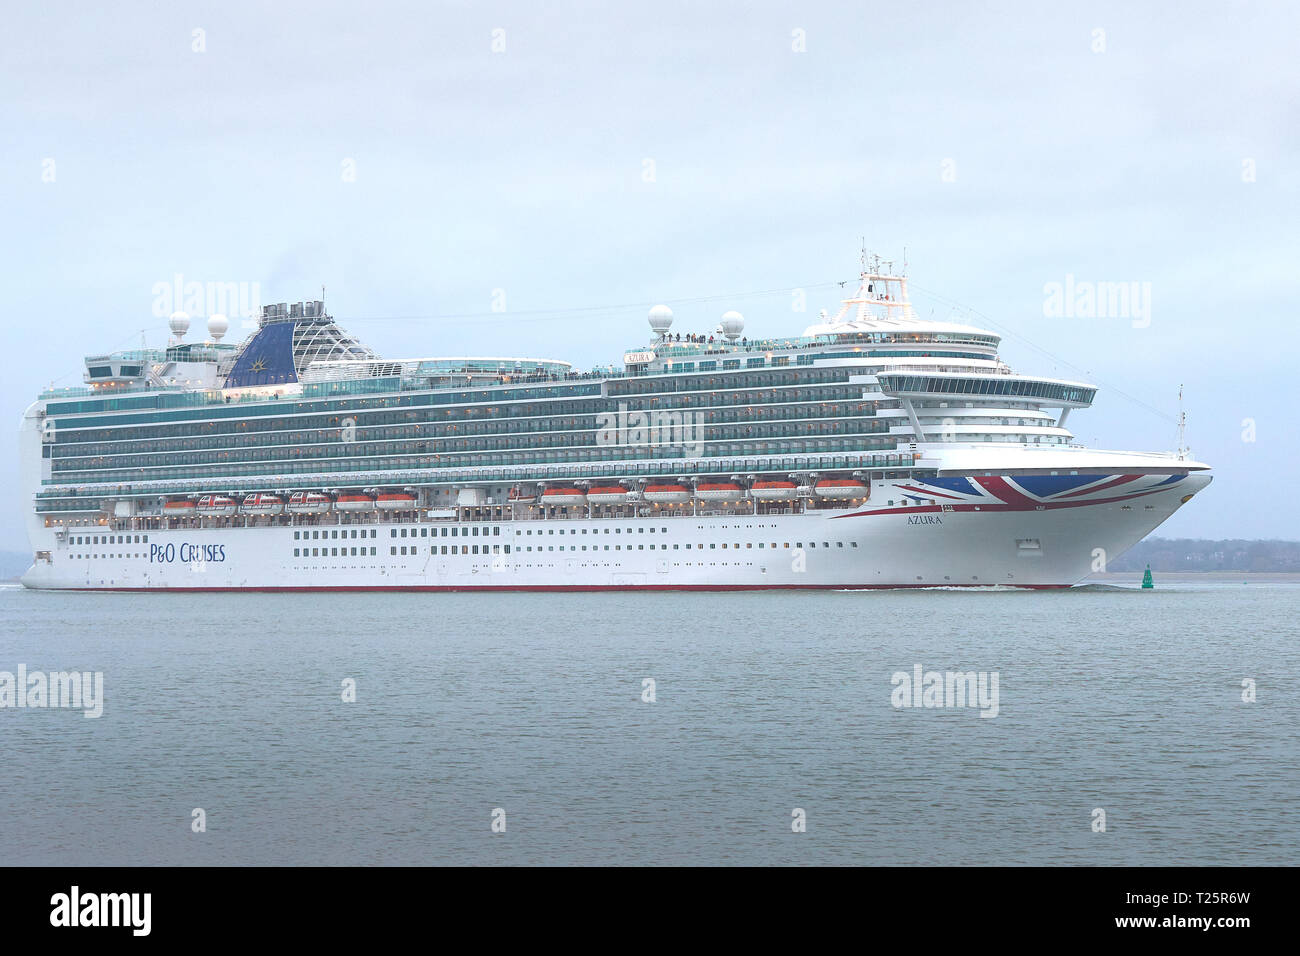 Die P&O Cruises, riesiges Kreuzfahrtschiff, AZURA, Unterwegs in Southampton Wasser, Abfahrt im Hafen von Southampton, UK. 22. März 2019. Stockfoto